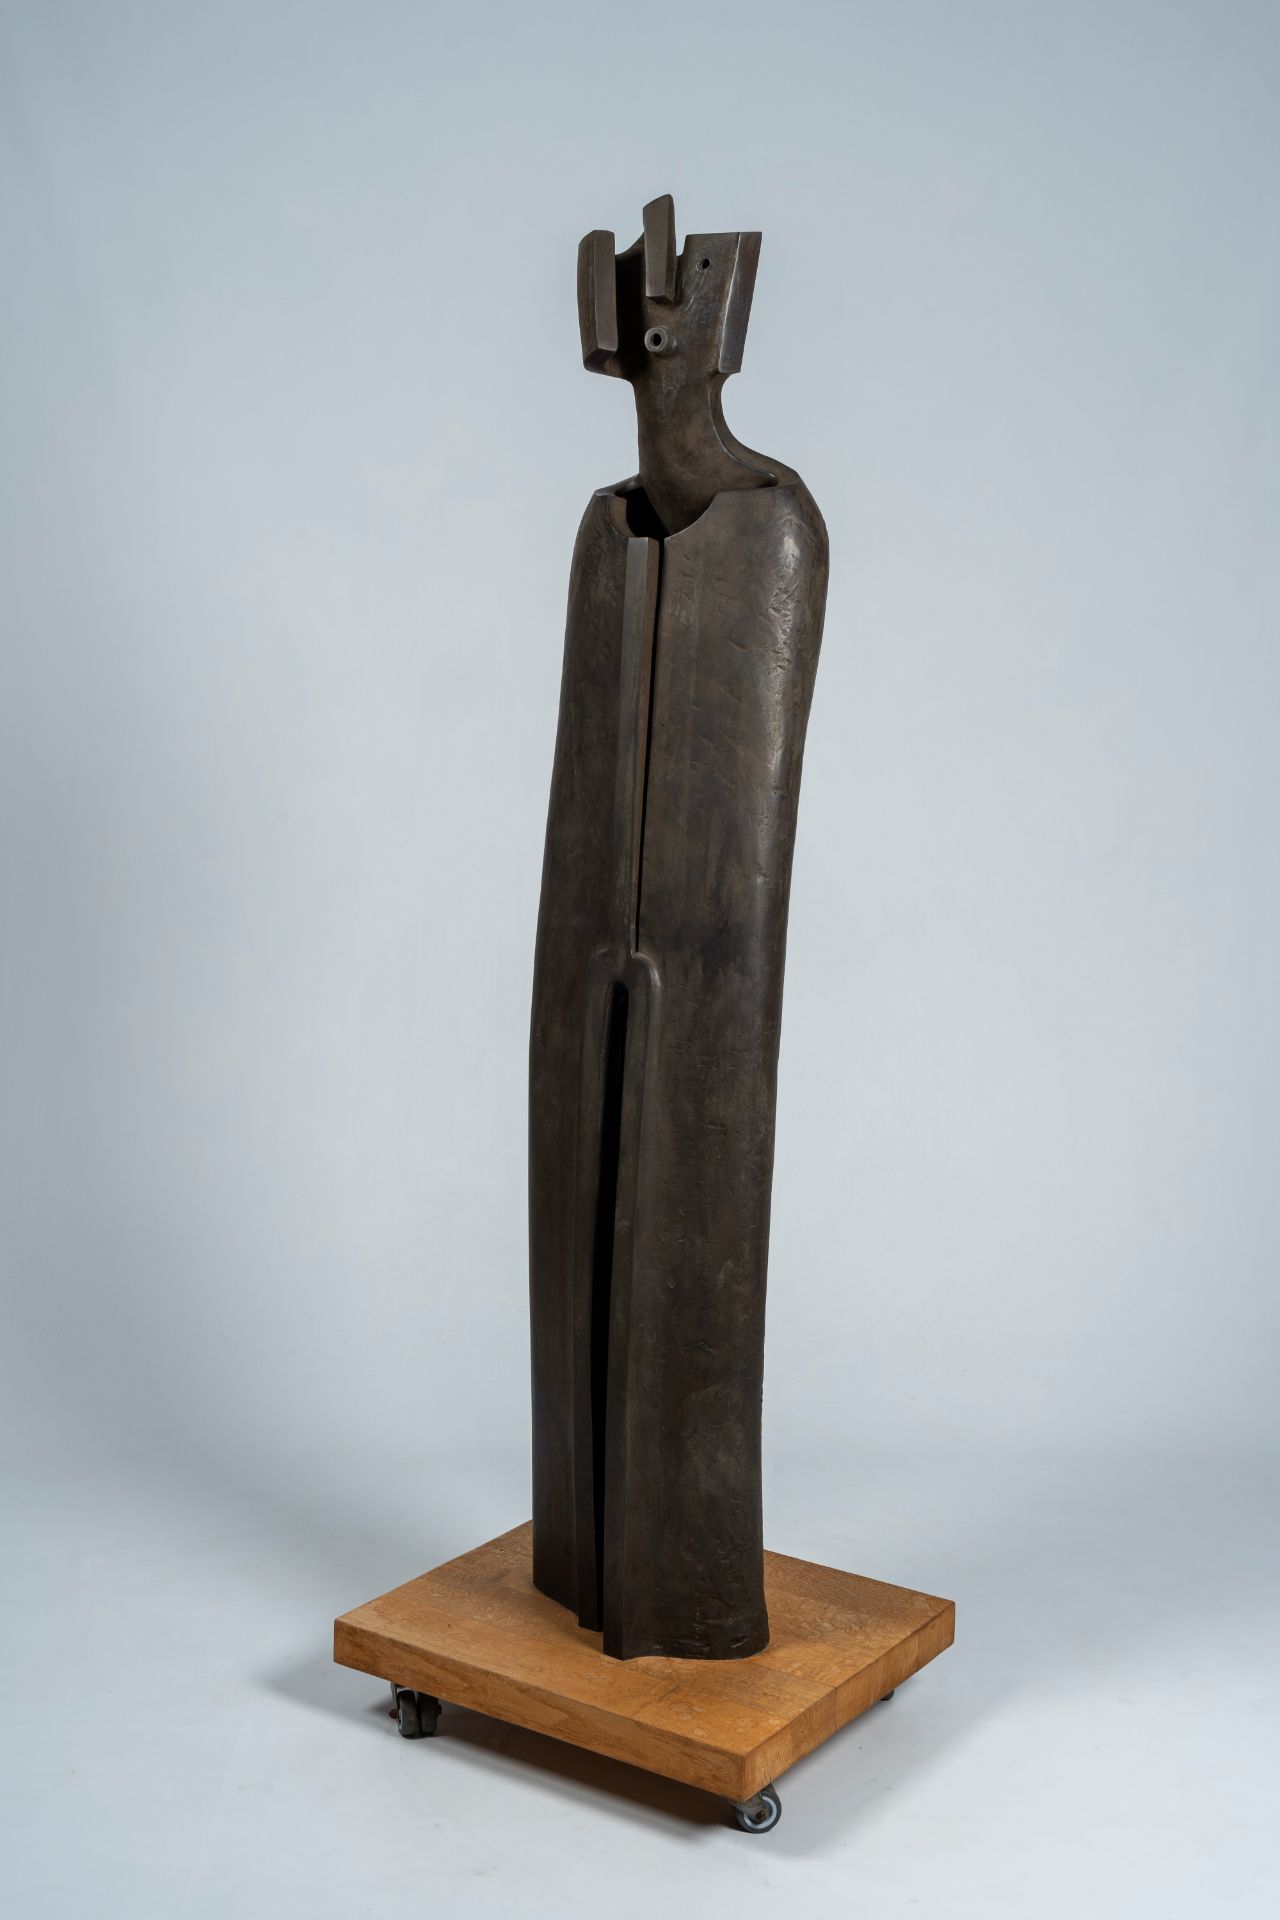 Jacques Tenenhaus (1947): 'The walking man', steel patinated bronze, foundry Landowski, ed. 1/8, dat - Image 2 of 9